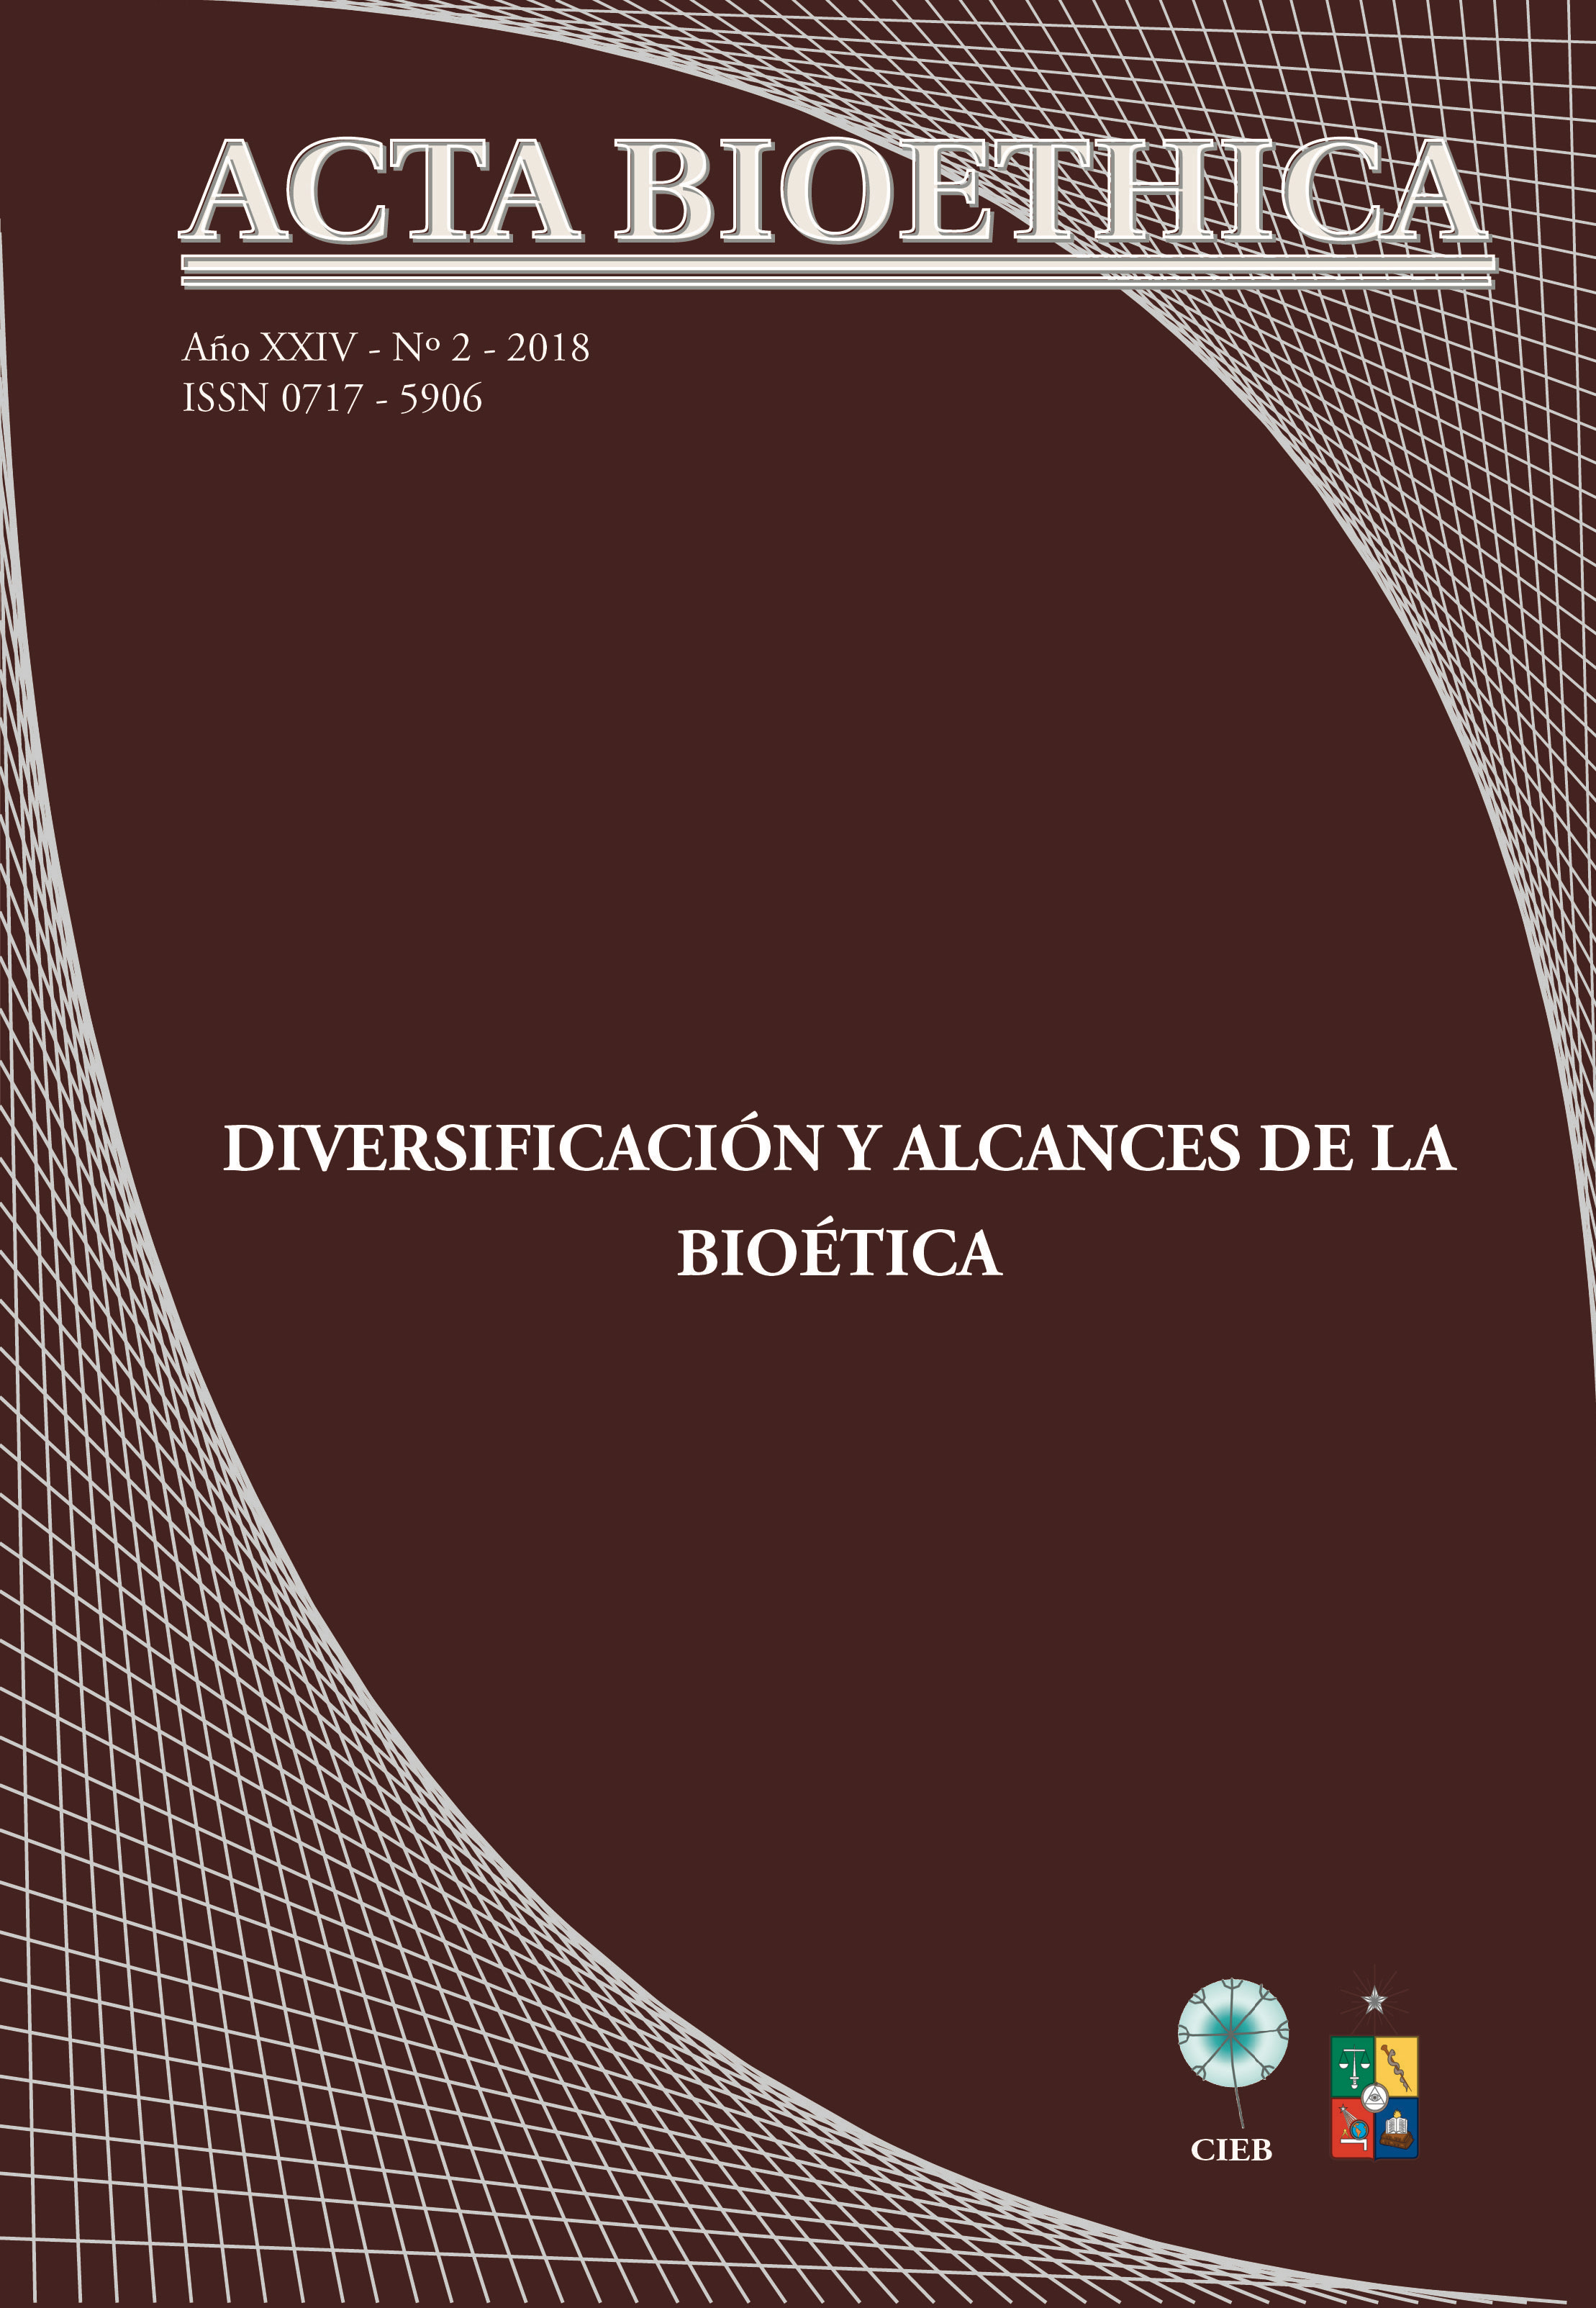 							Ver Vol. 24 Núm. 2 (2018): Diversificación y alcances de la bioética
						